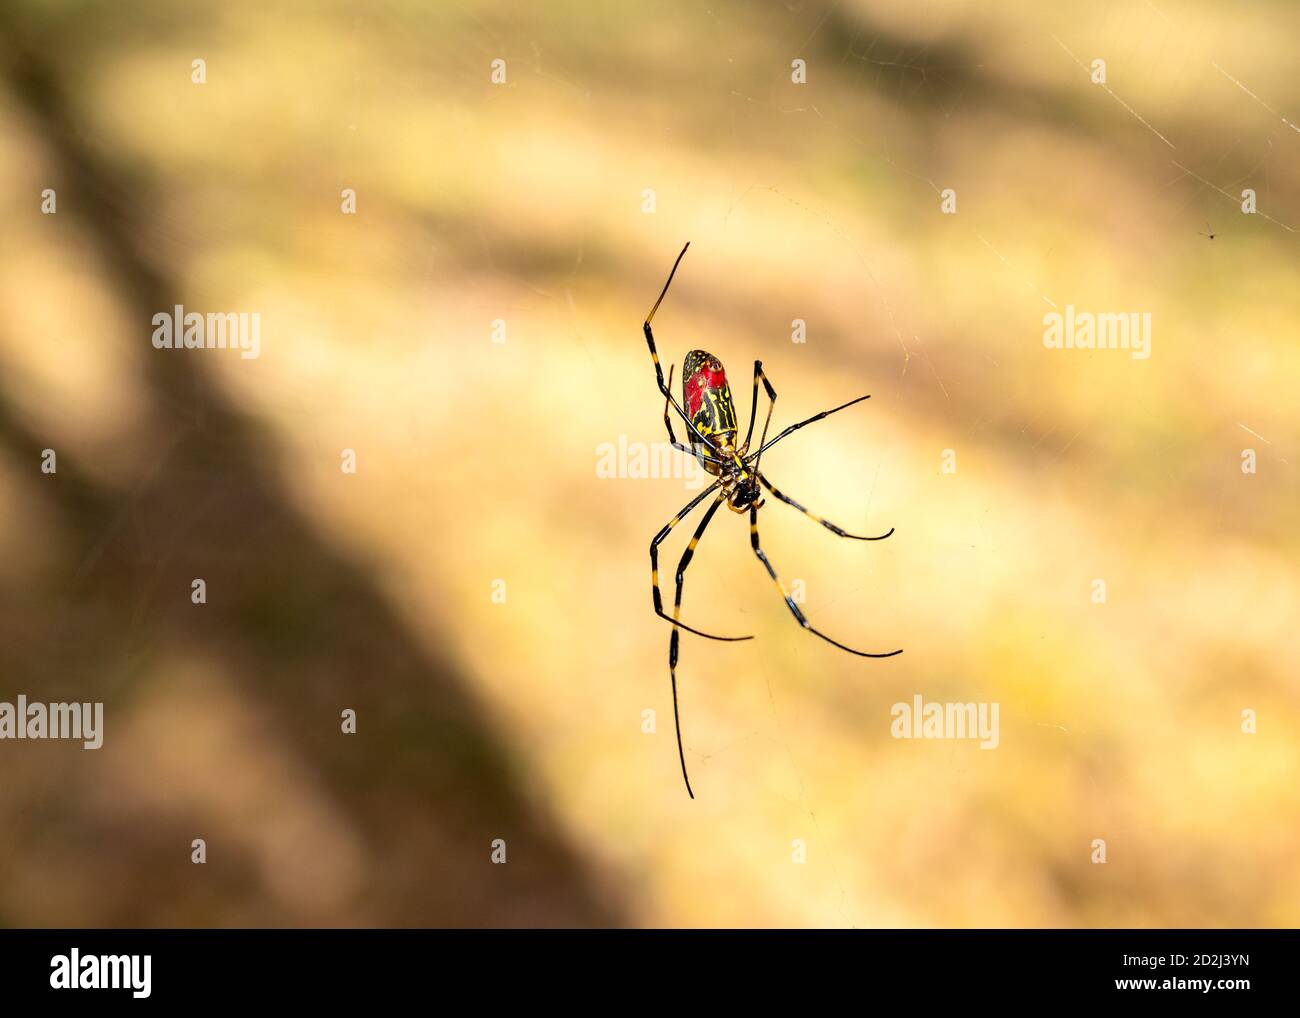 Gros plan d'une araignée japonaise Joro se déplaçant à travers son web. Image DOF peu profonde prise en Asie. Banque D'Images